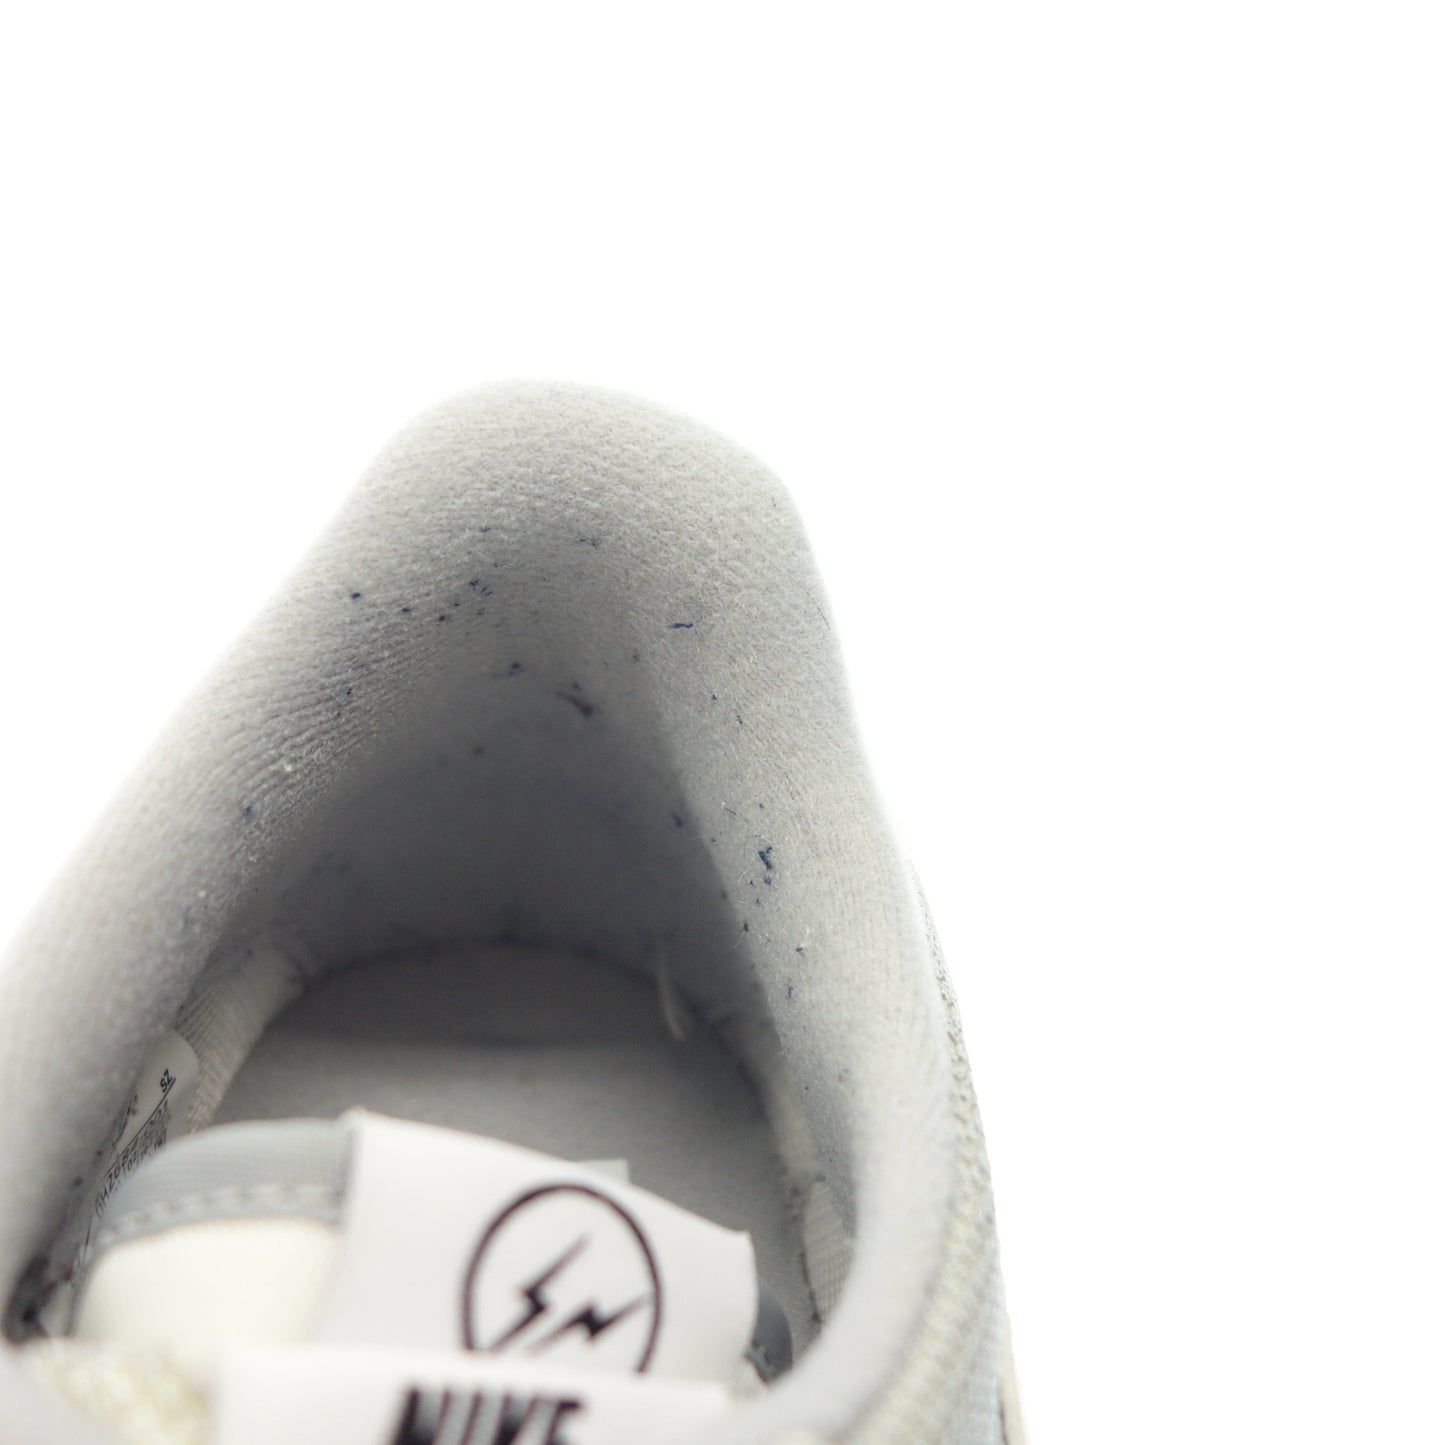 状况非常好 ◆ Nike Sacai 运动鞋 DH2684-001 LD 华夫格男士灰色 尺码 26.5 厘米 NIKE Sacai [AFD8] 